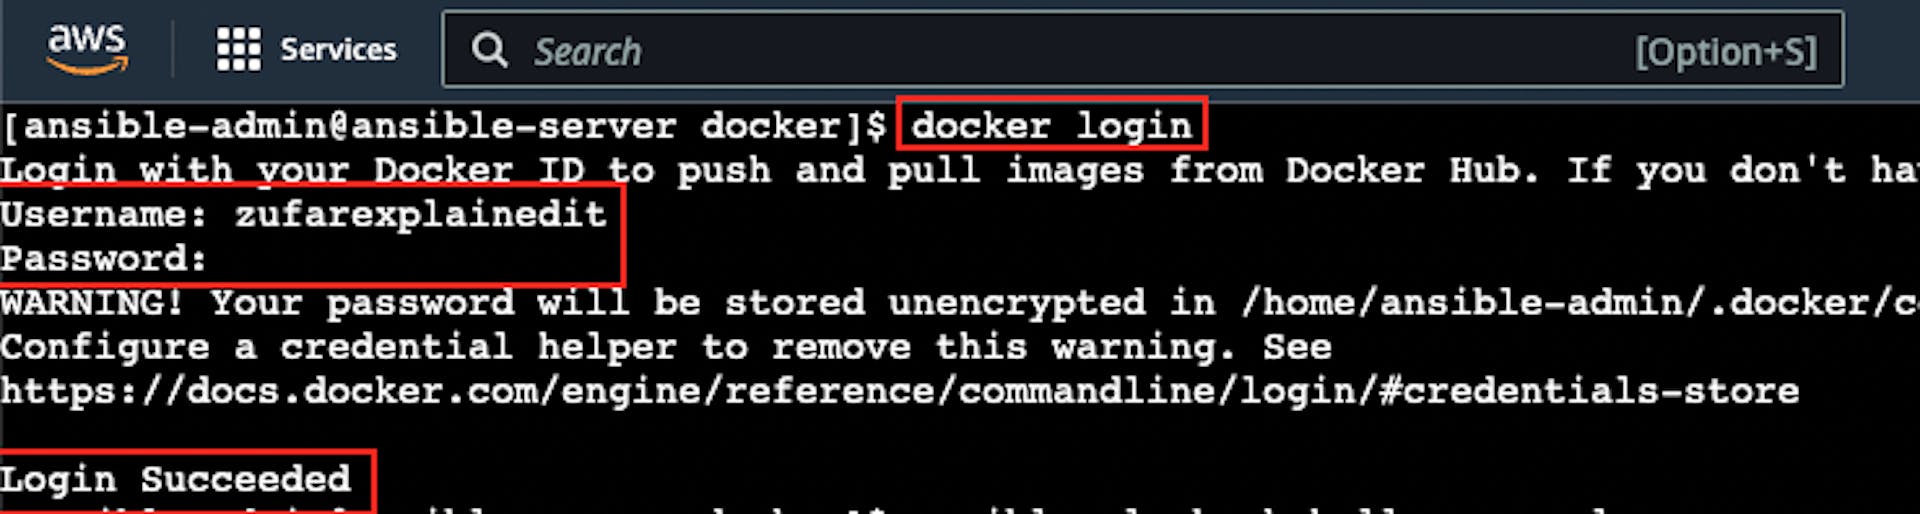 A captura de tela do login bem-sucedido do docker na instância EC2 "AnsibleServer"